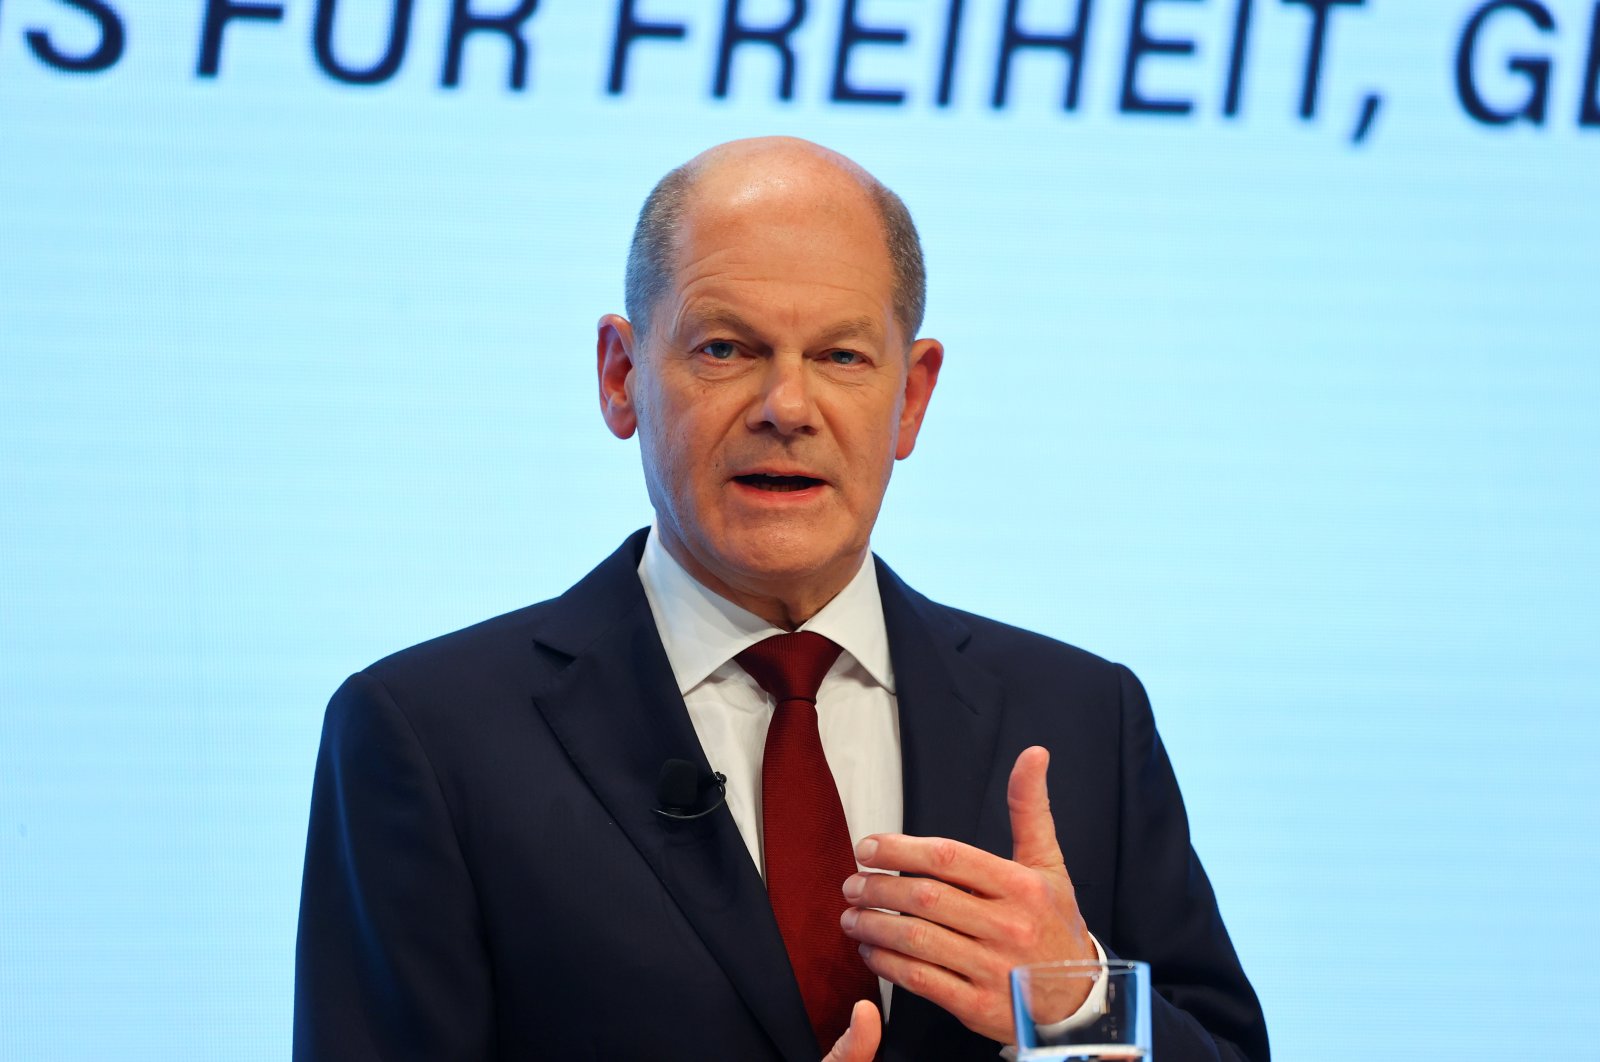 Scholz dari SPD akan menjadi Kanselir Jerman yang baru di tengah lonjakan COVID-19